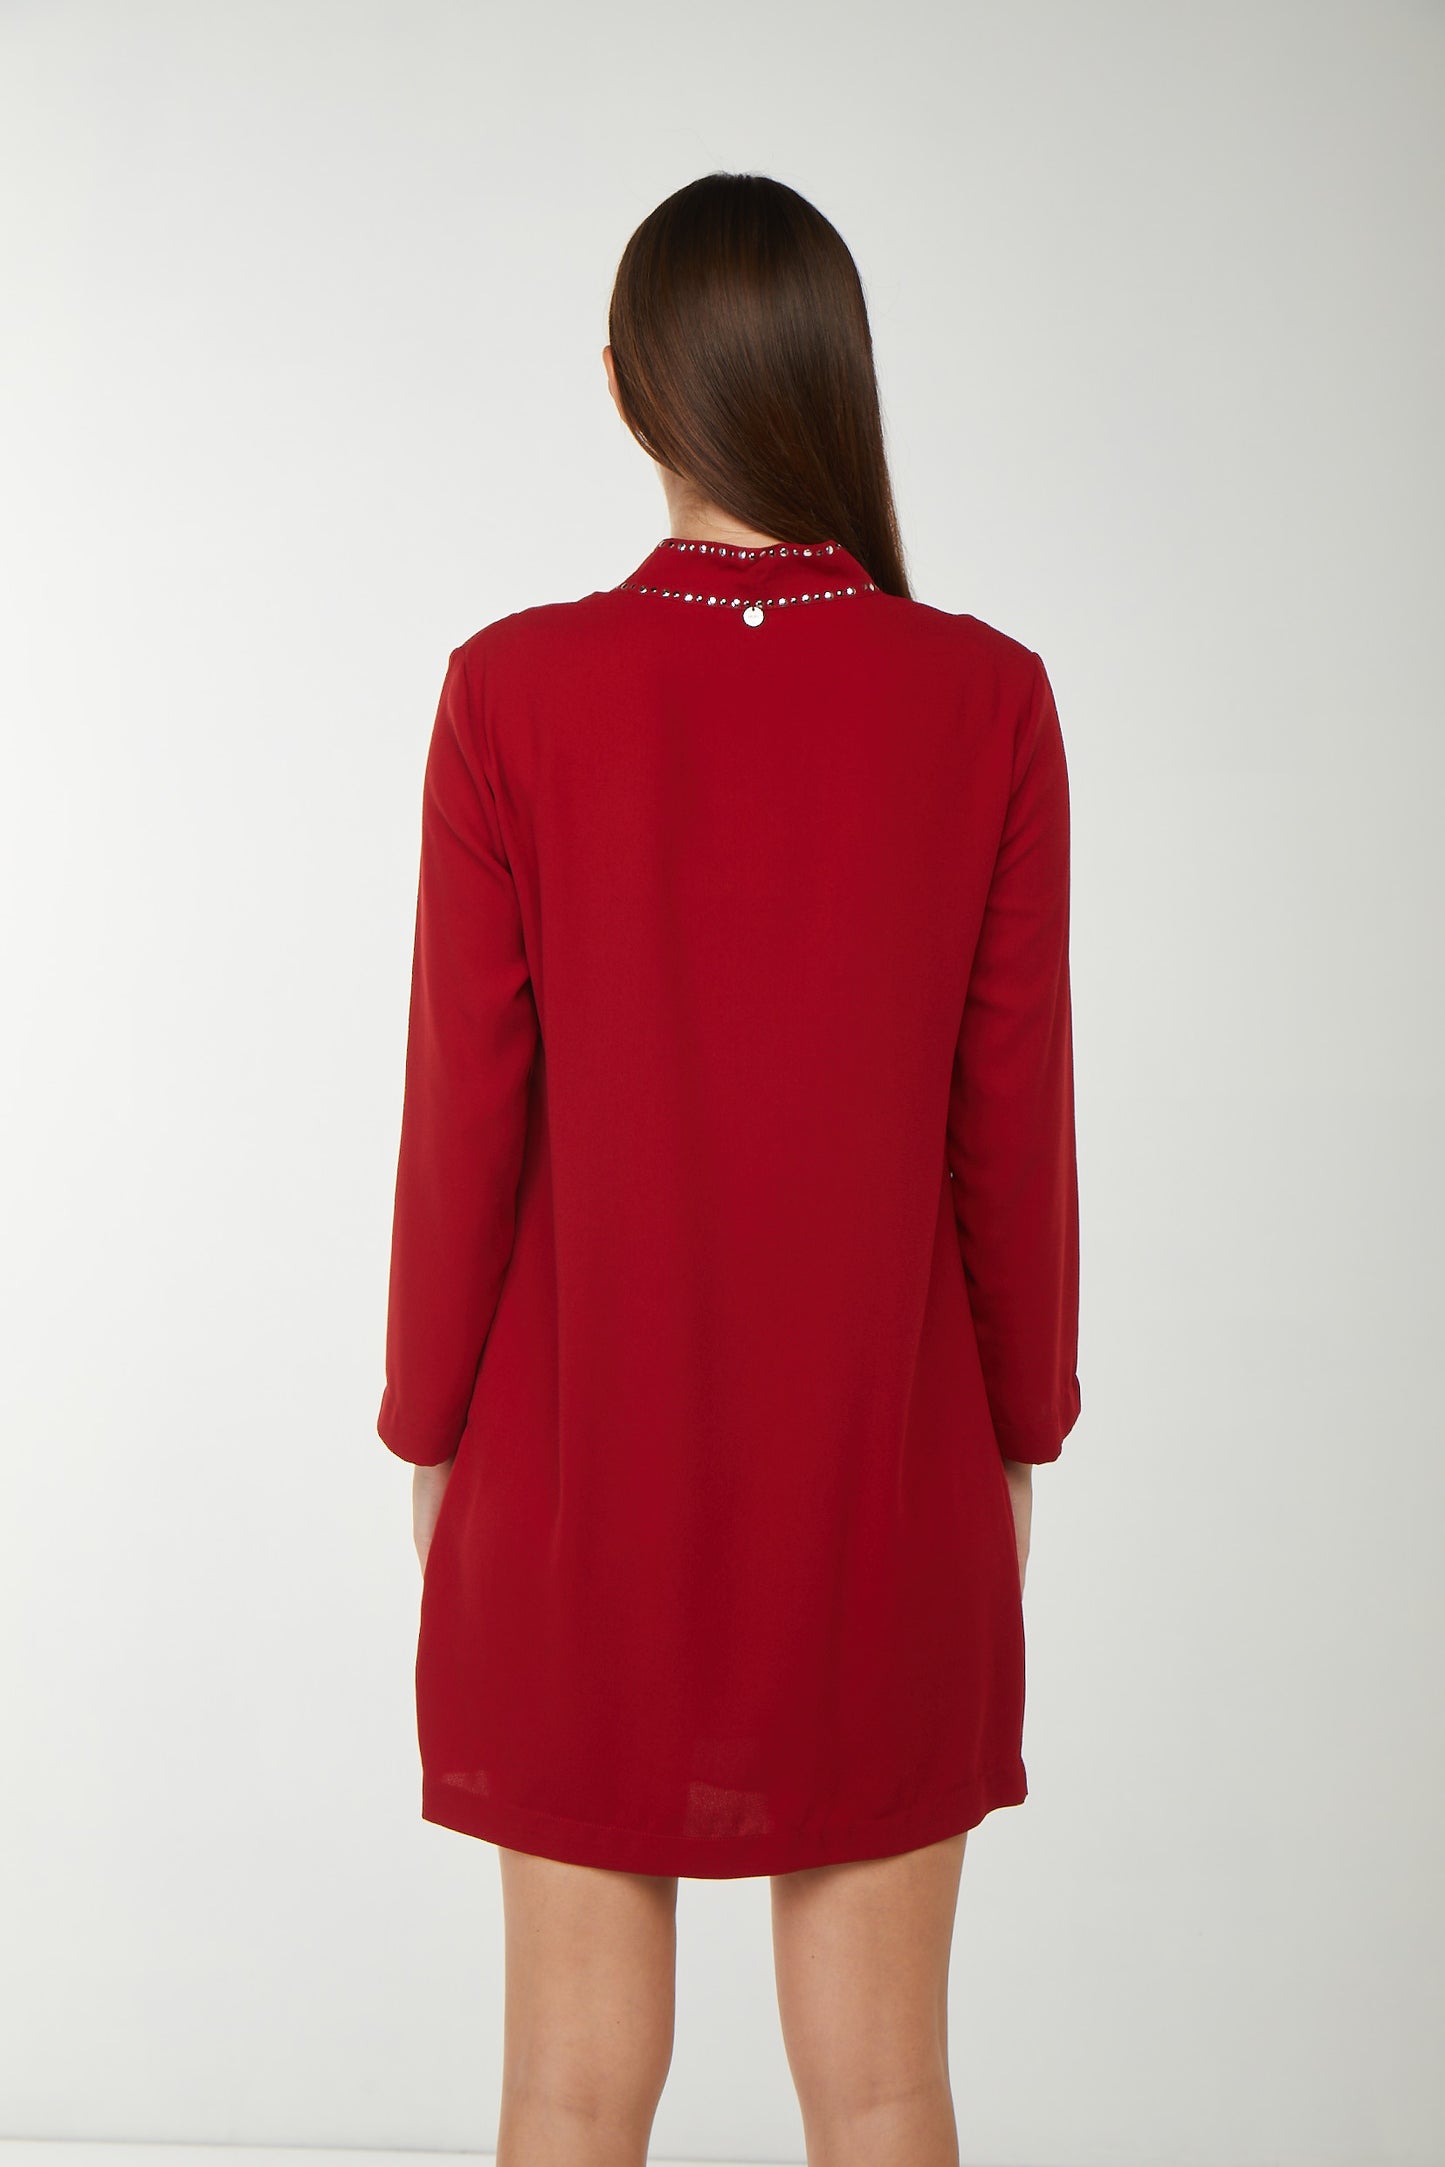 LIU JO Short Red Dress